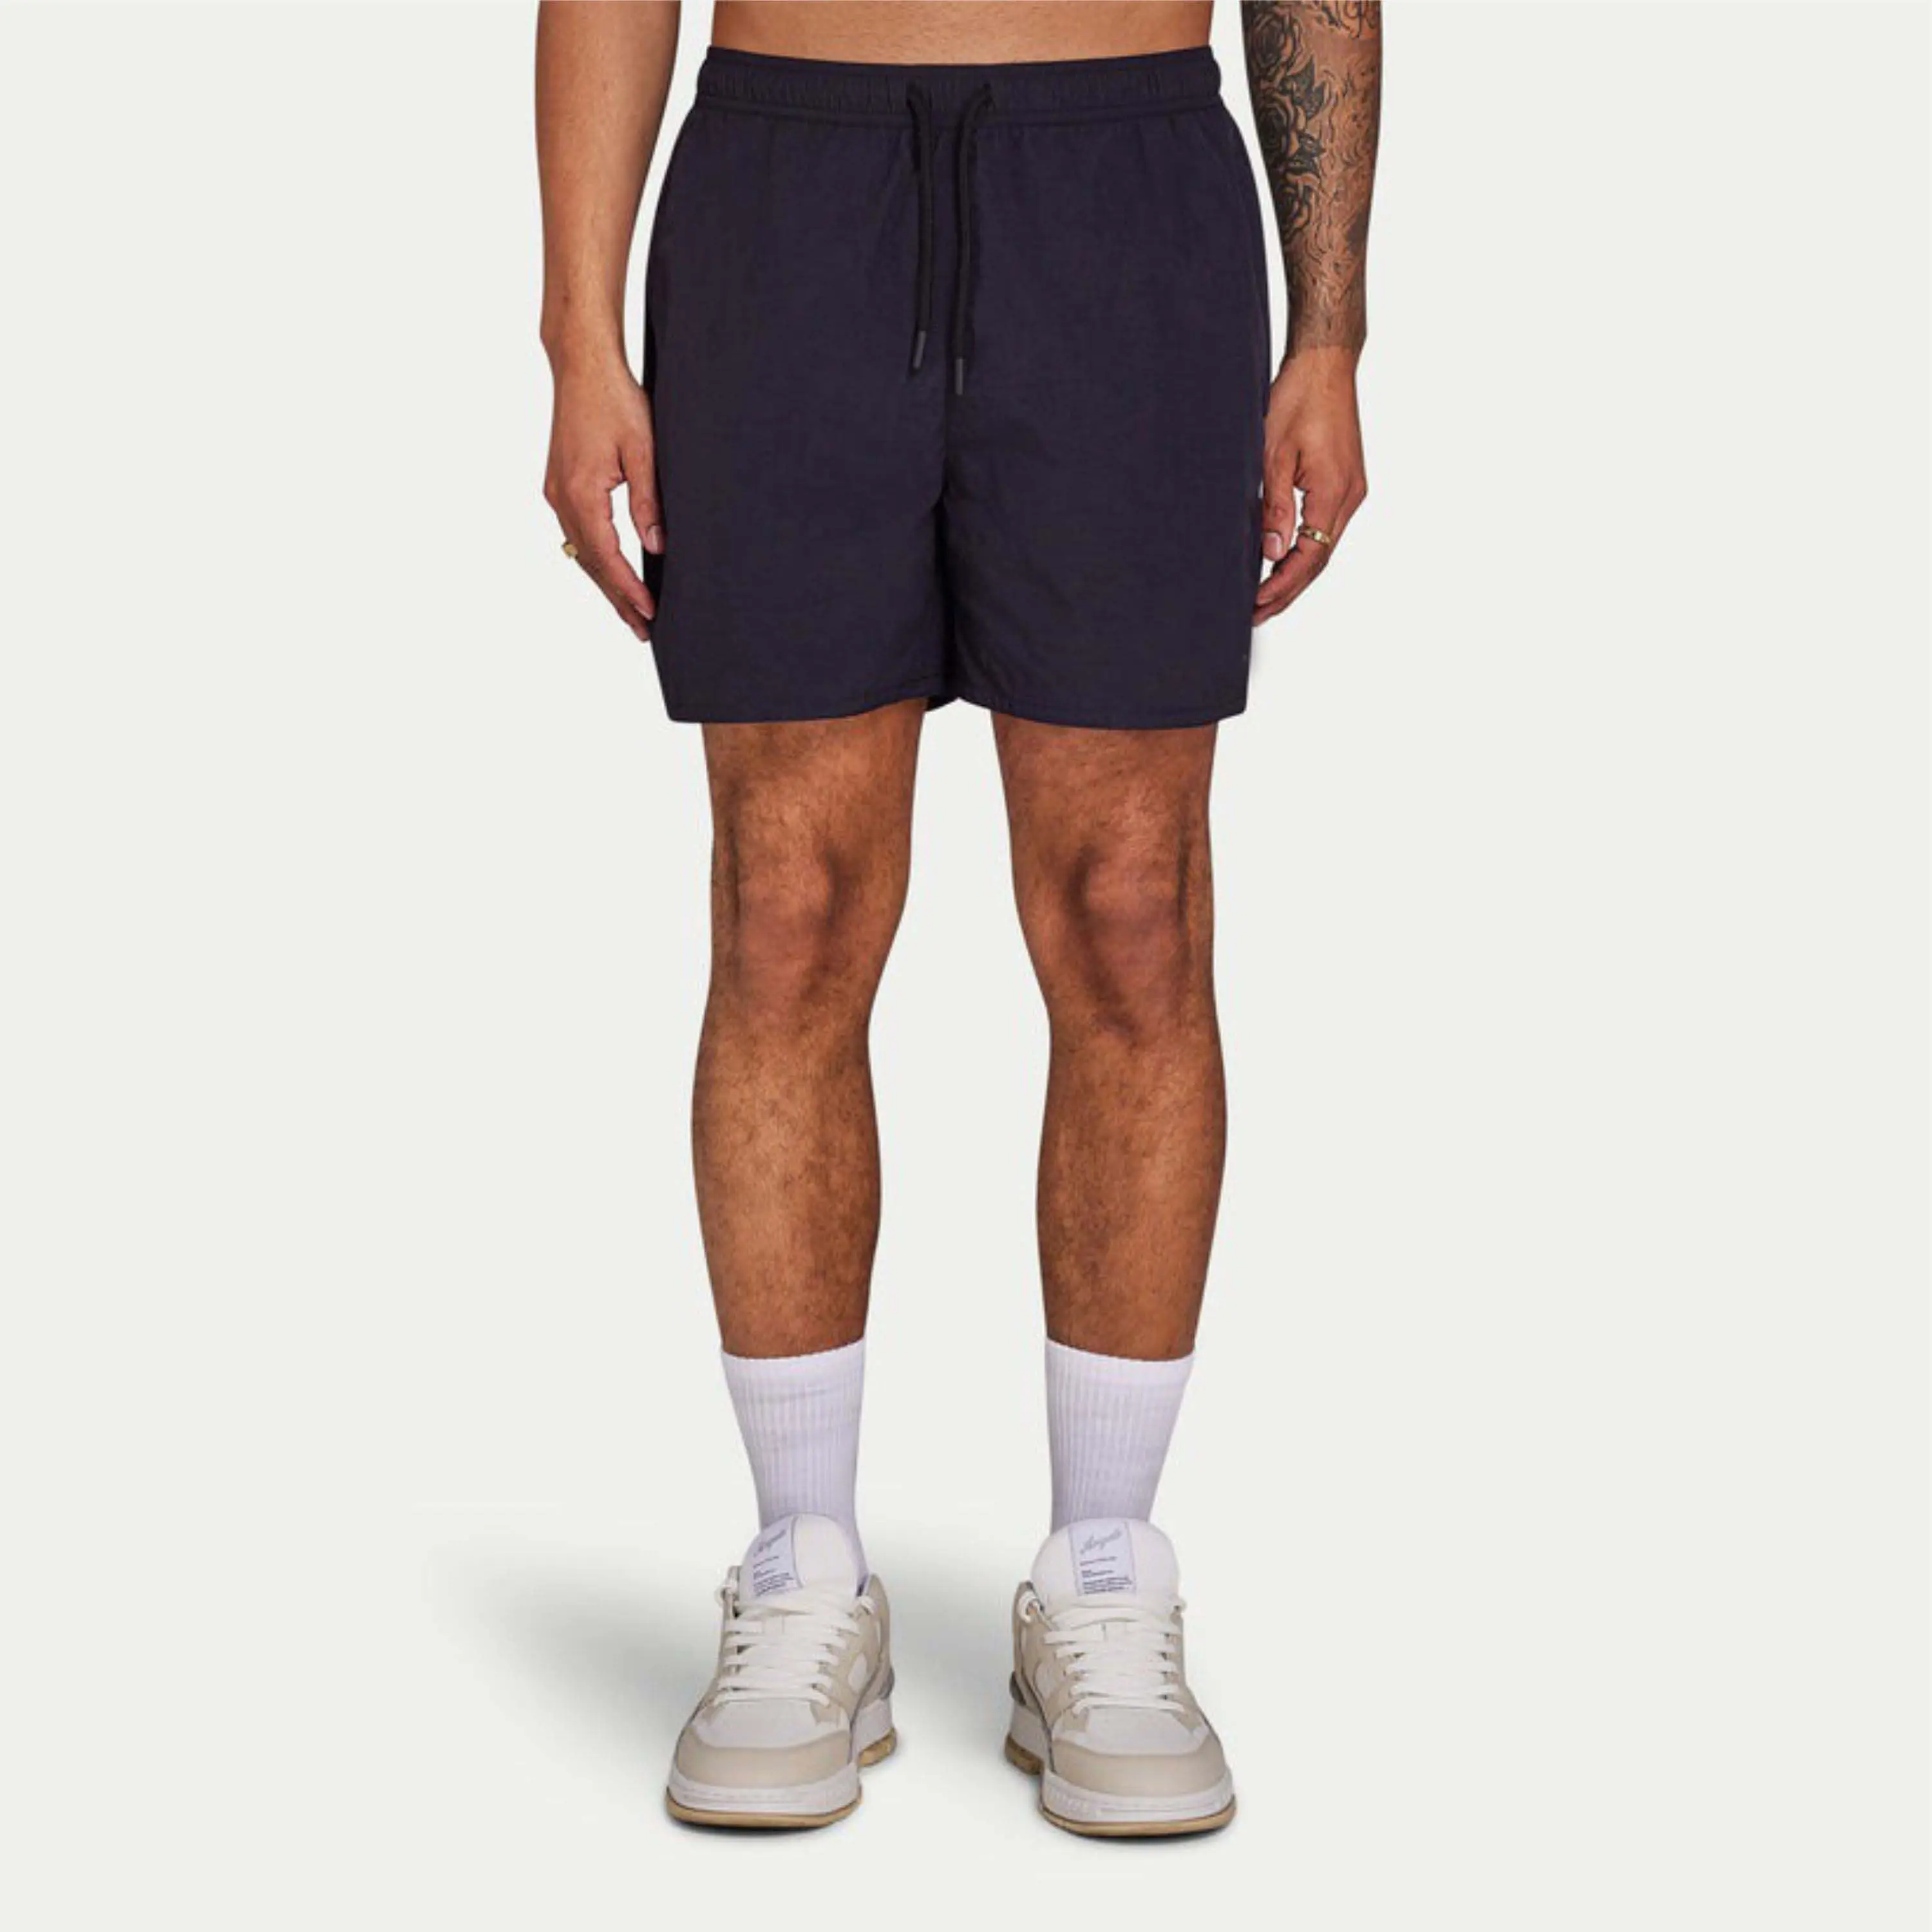 Vêtements pour hommes en polyester personnalisés Shorts pour hommes à séchage rapide Shorts d'entraînement de salle de sport respirants à séchage rapide Shorts d'entraînement pour hommes